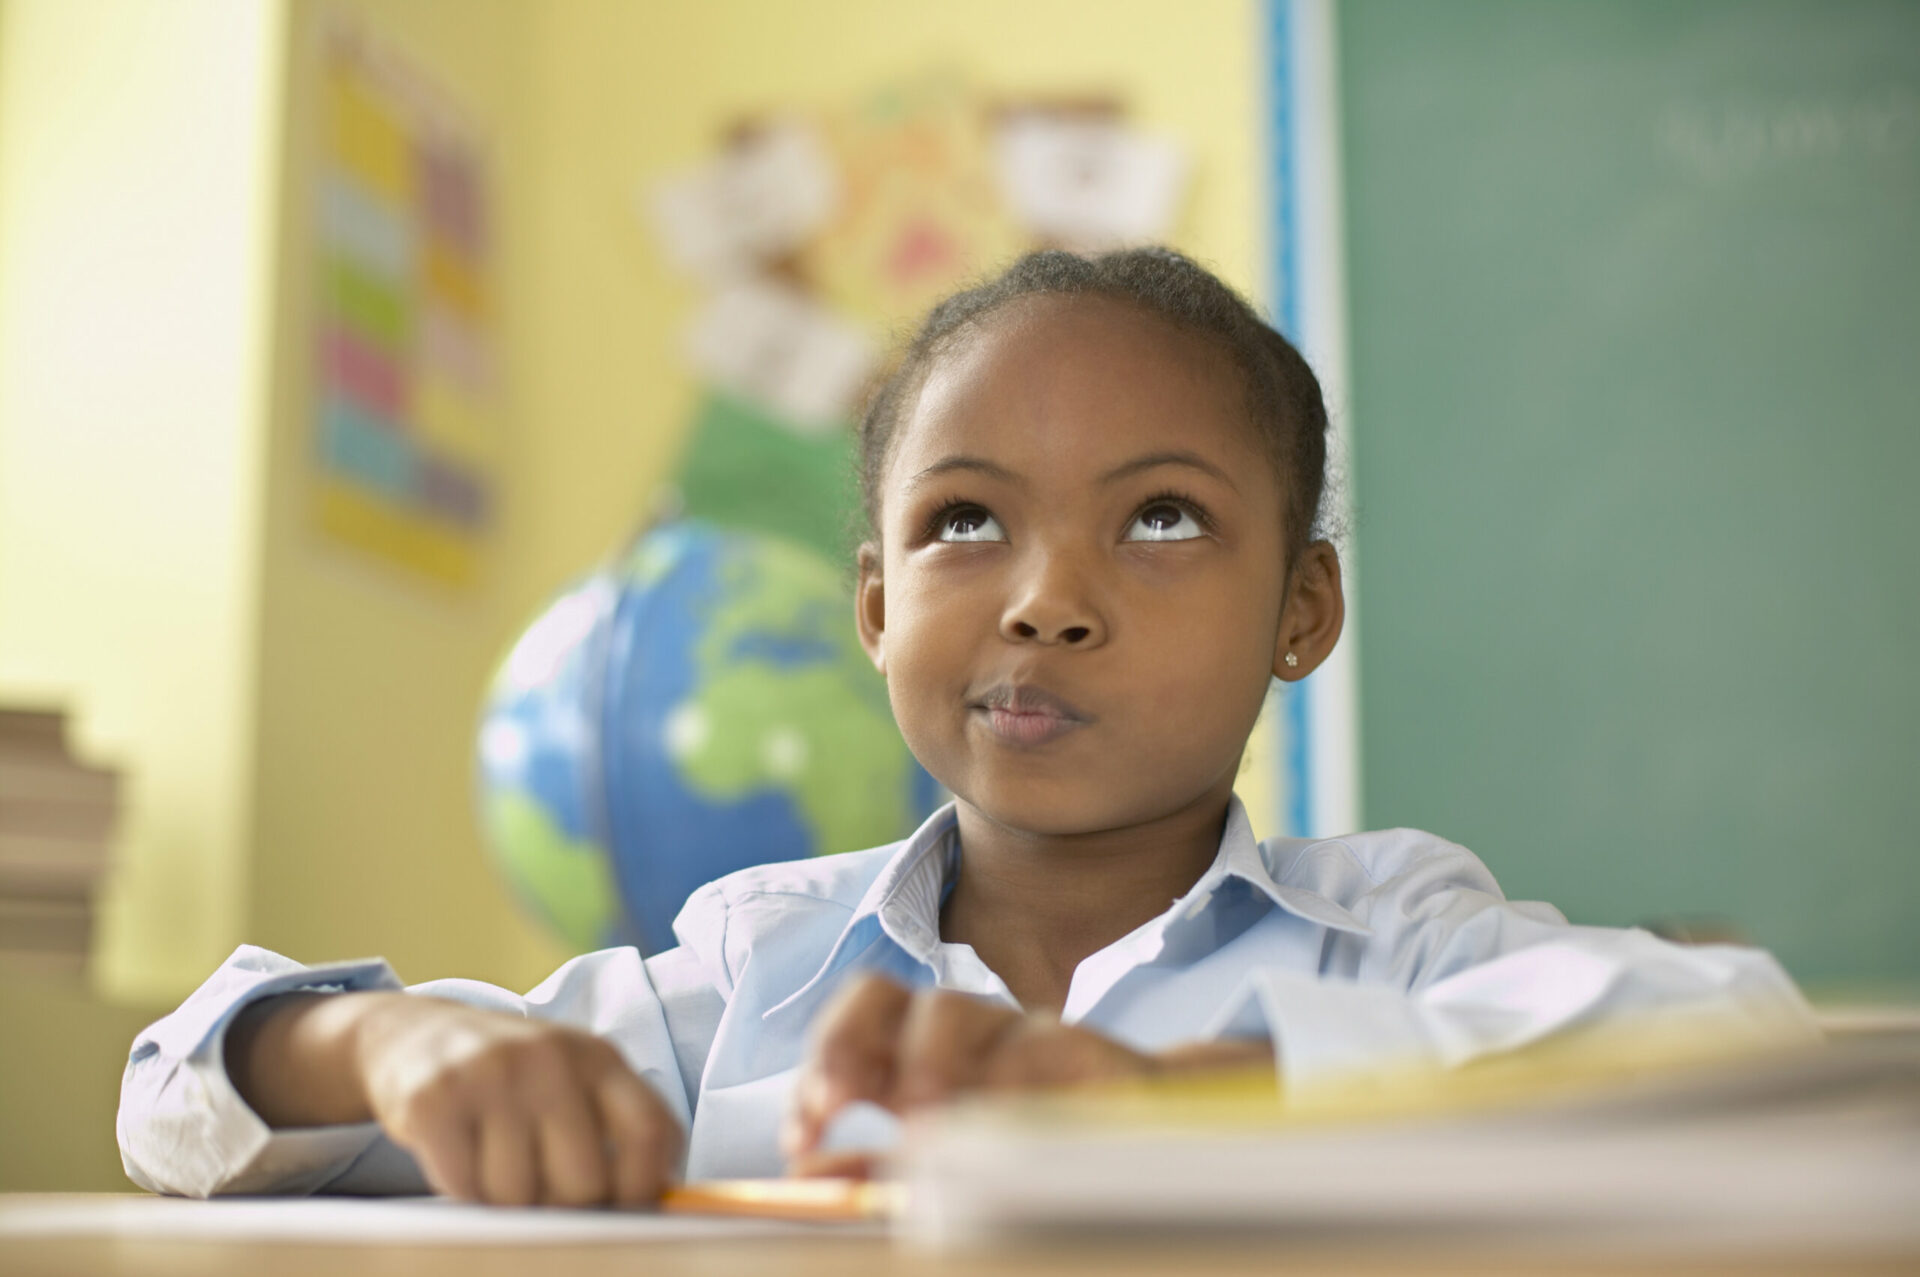 Aluna com cara de pensativa em uma sala de aula, sentada na carteira com papel e lápis na mão. Ela é negra, tem por volta de 6 anos e veste uma camisa azul claro.